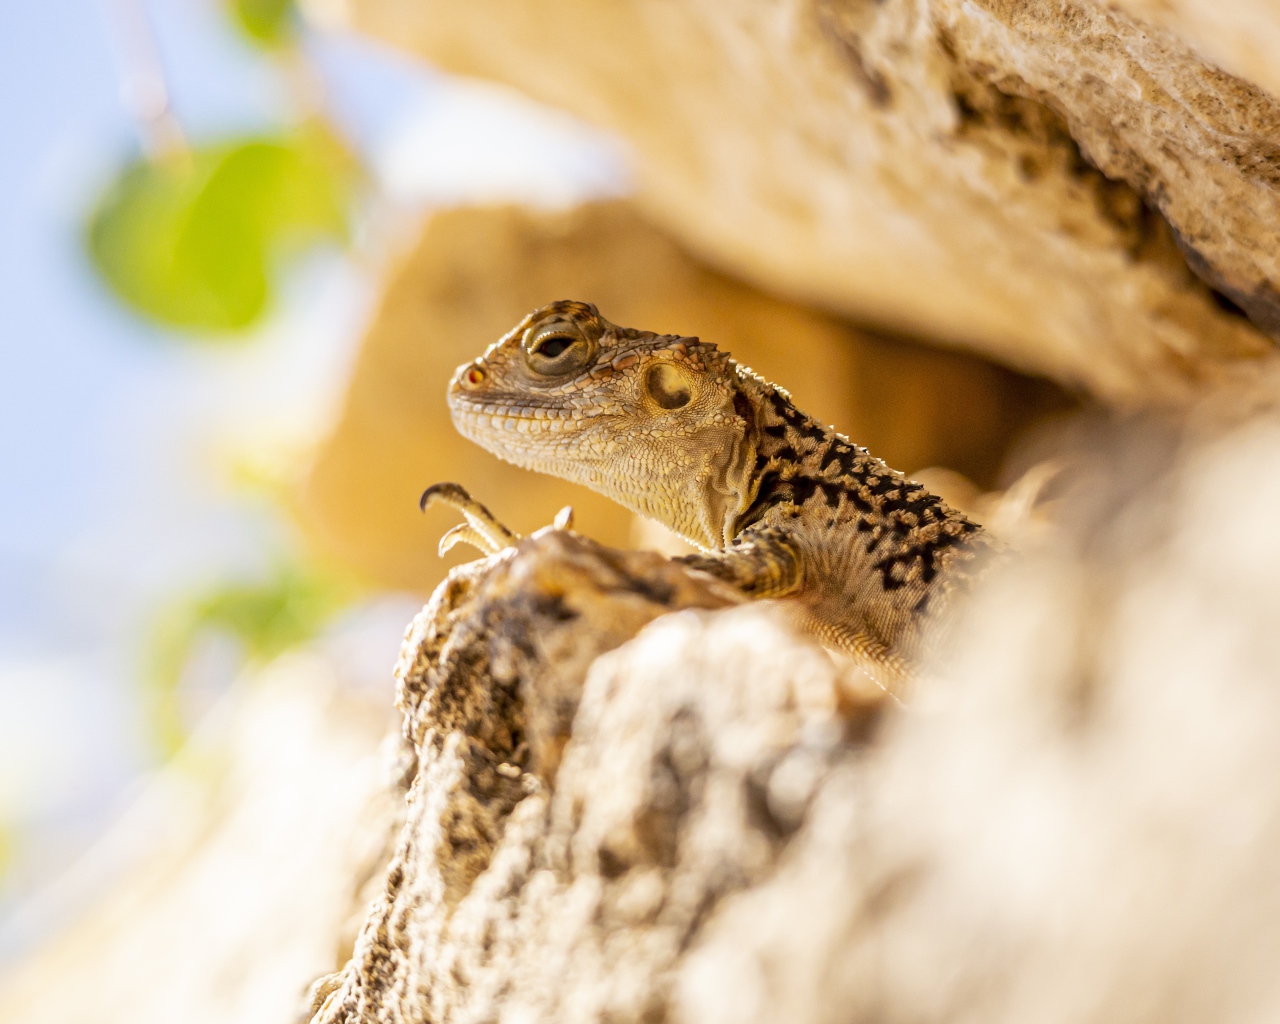 Little lizard hiding in the rocks